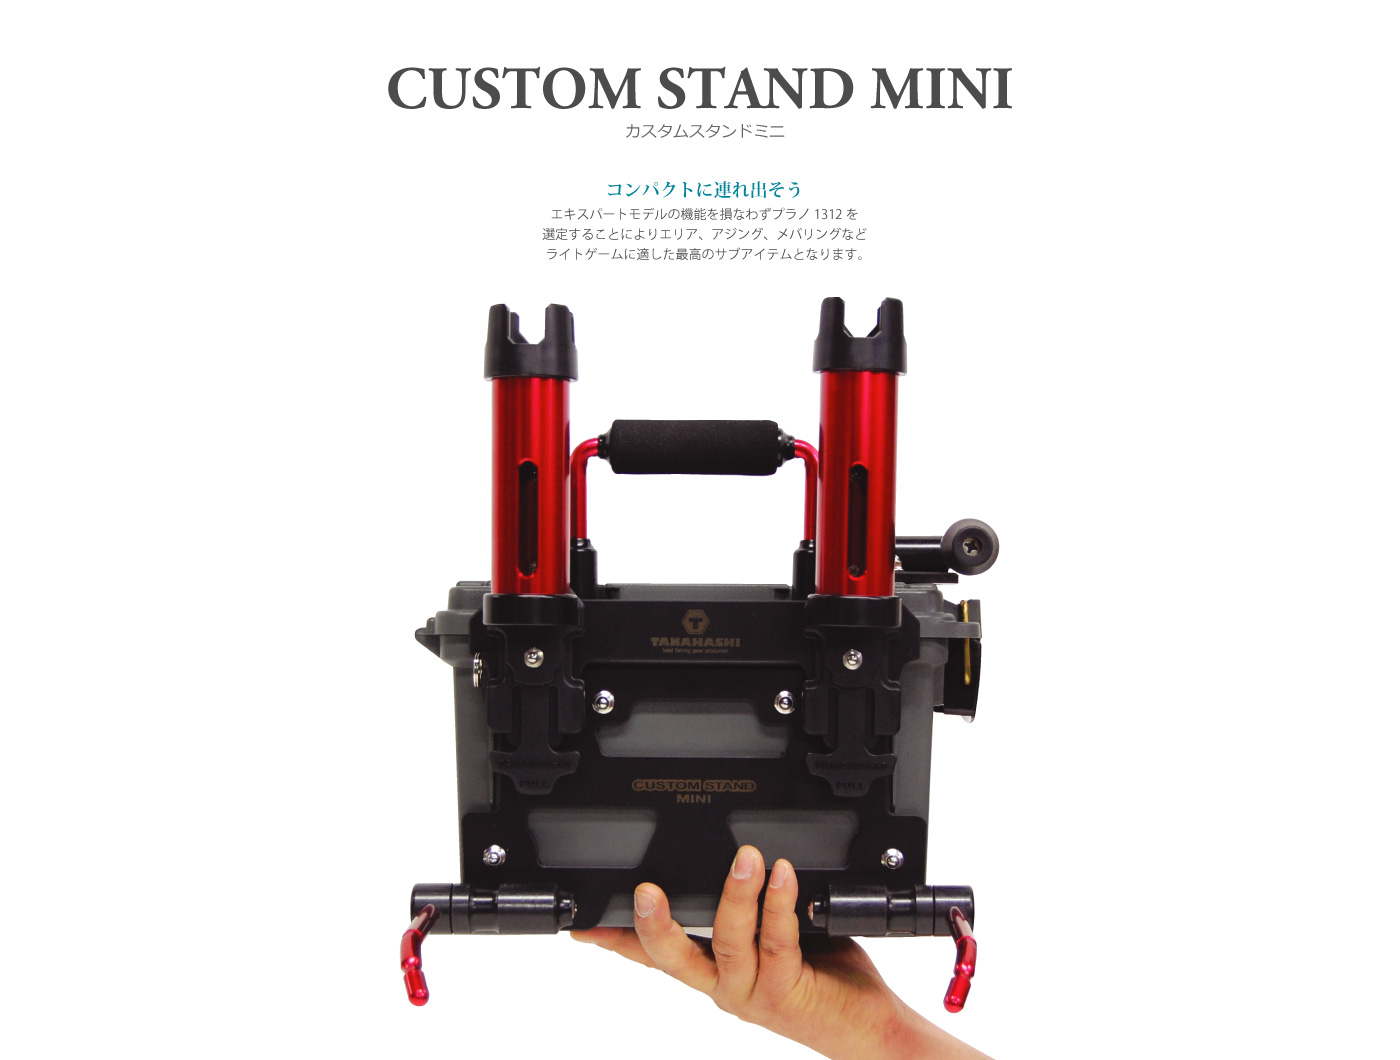 Tanahashi Custom Stand Mini / Transportbox Für Das Spinnangeln / Farbe: Grün Mit Roten Anbauteilen